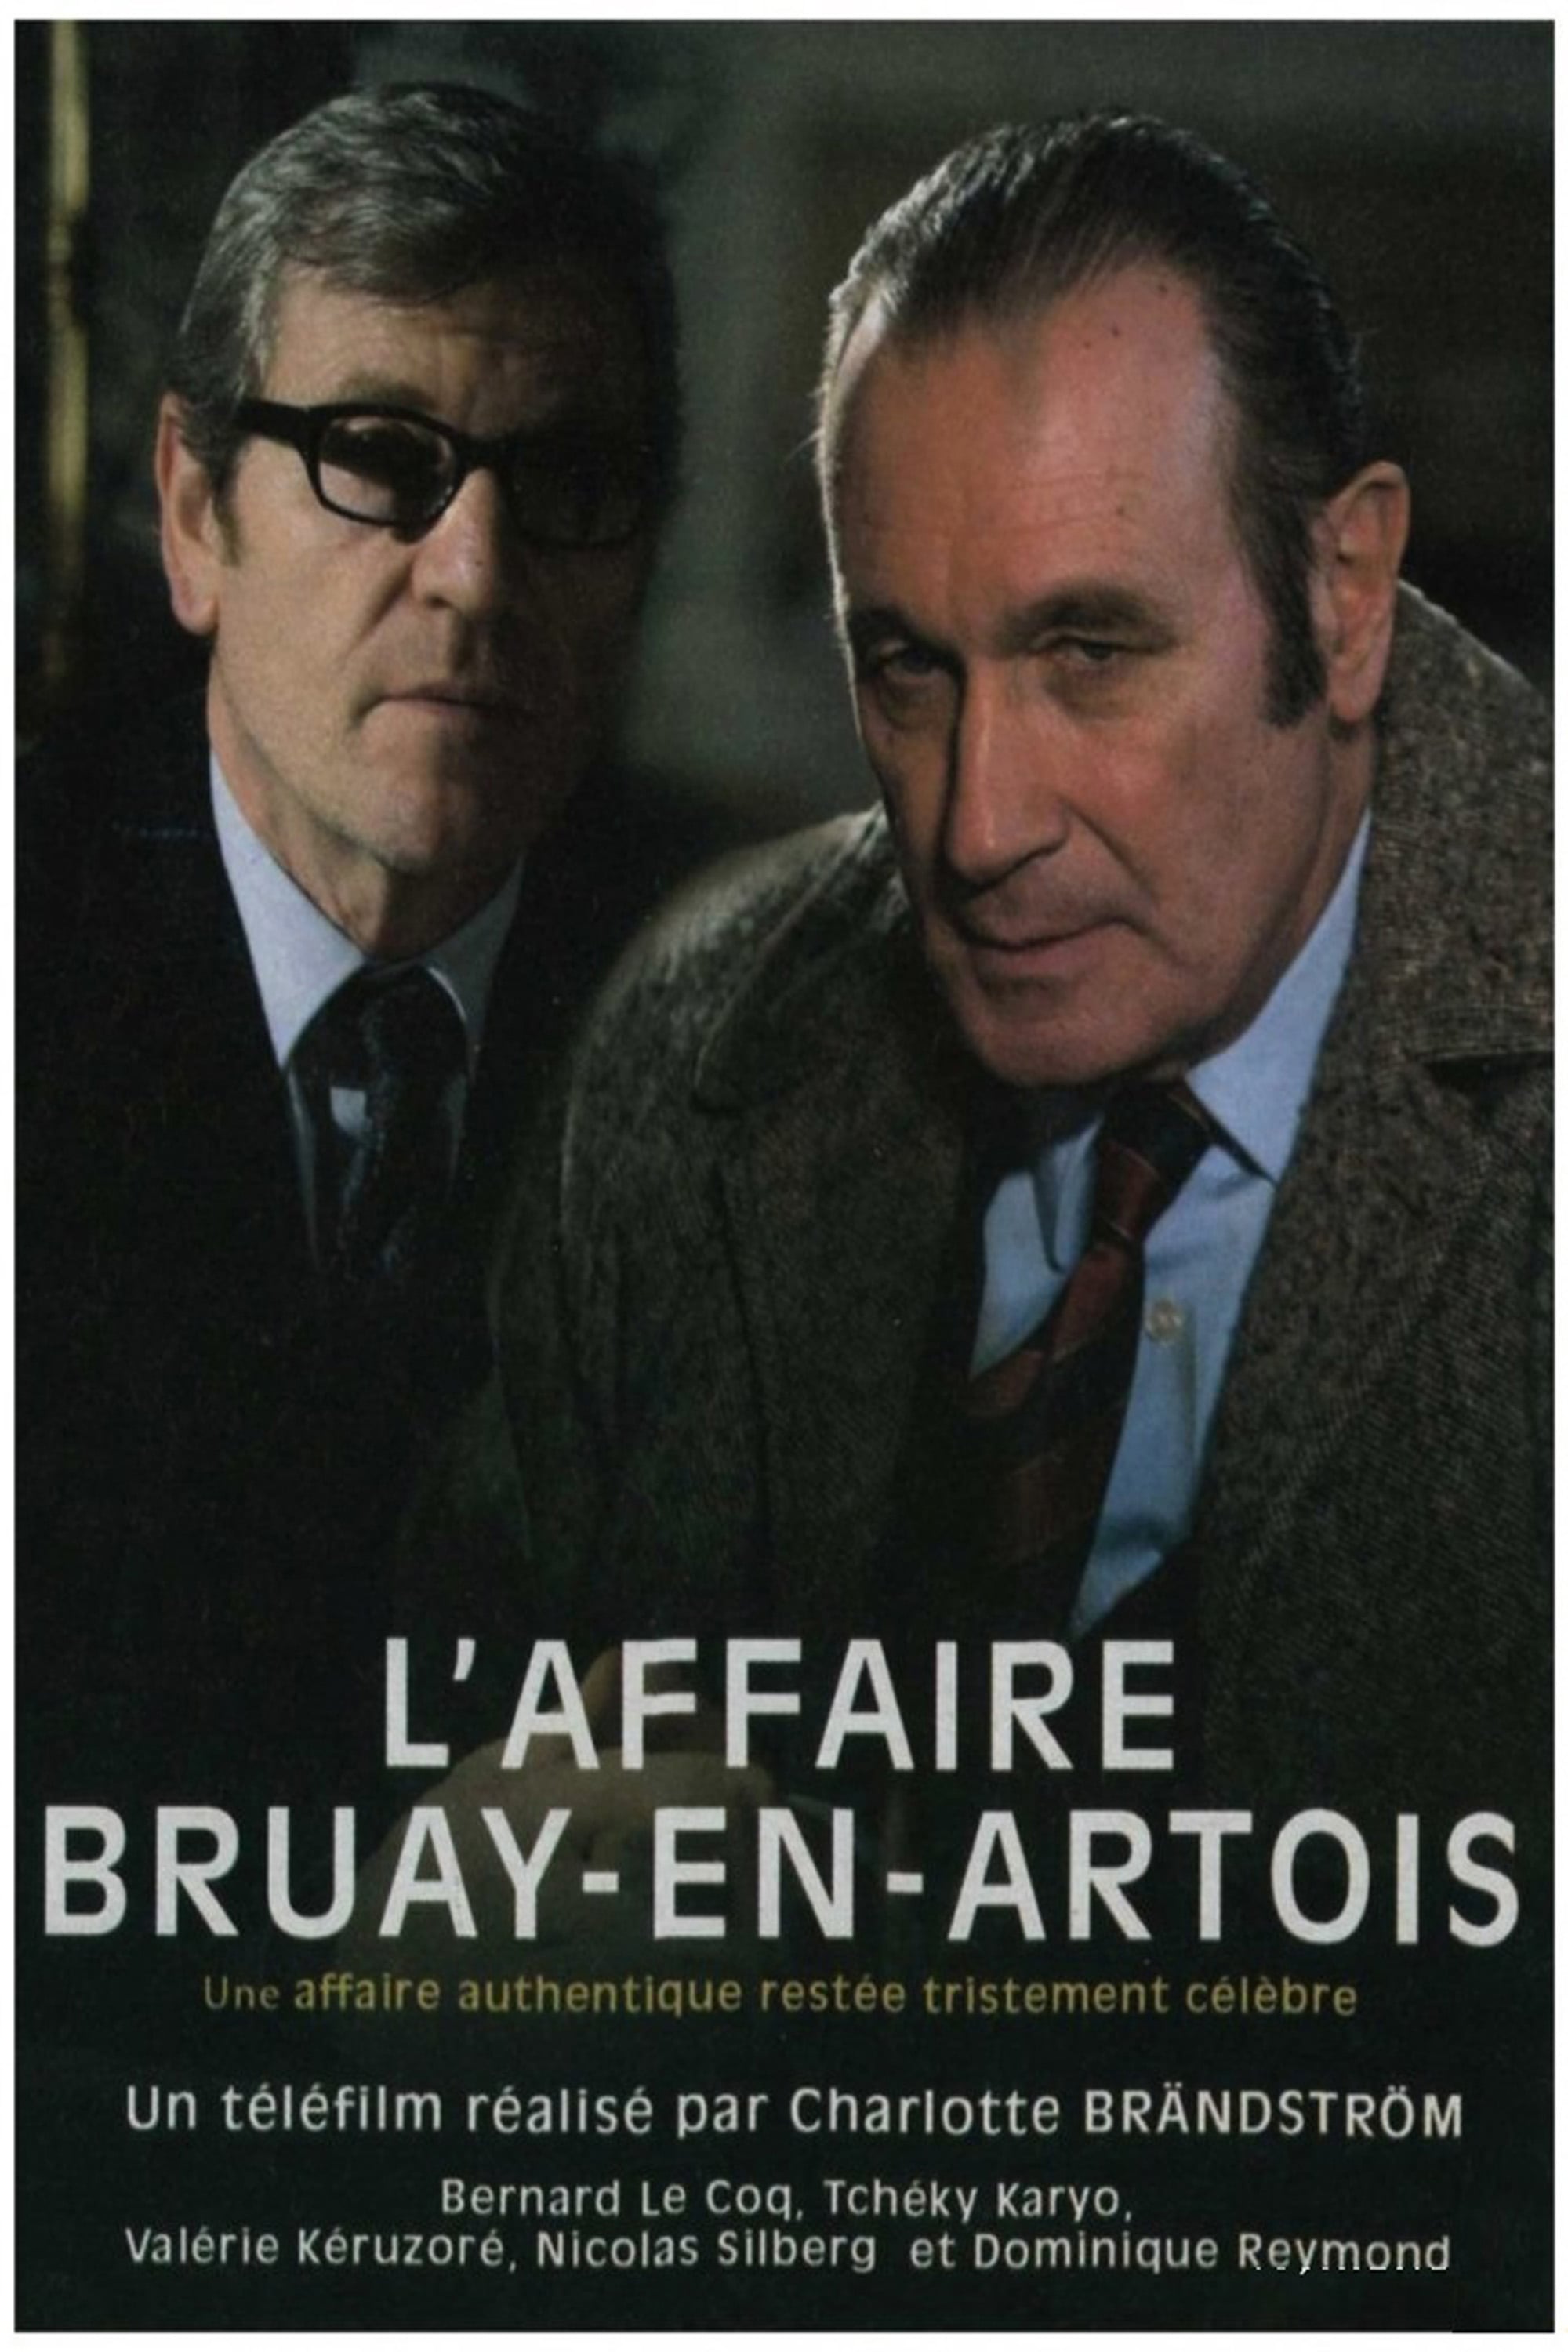 Caratula de L AFFAIRE BRUAY-EN-ARTOIS (El caso Bruay en Artois) 